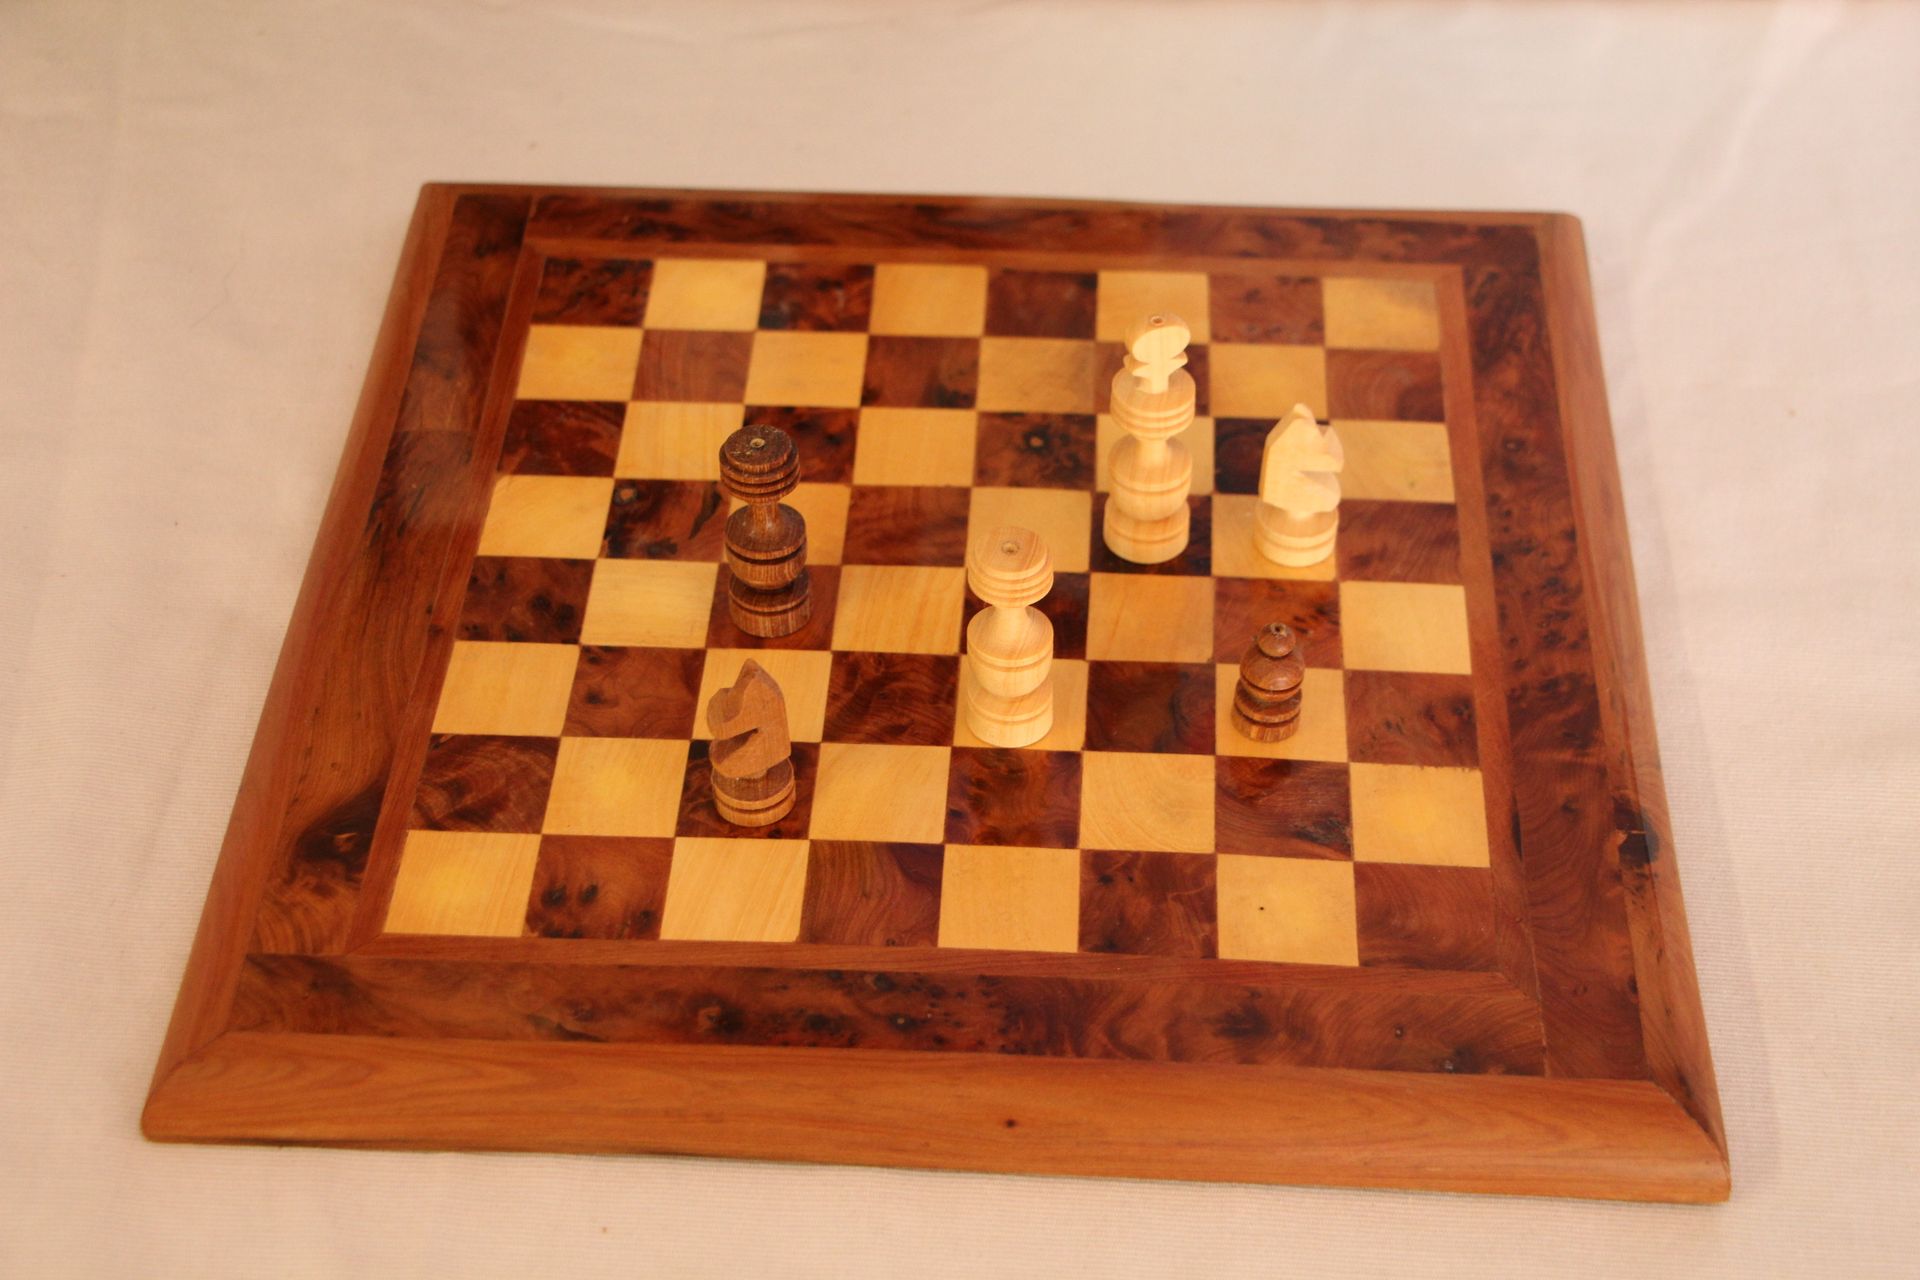 Null 完整的木制国际象棋（状况良好）-棋盘30cm x 30cm